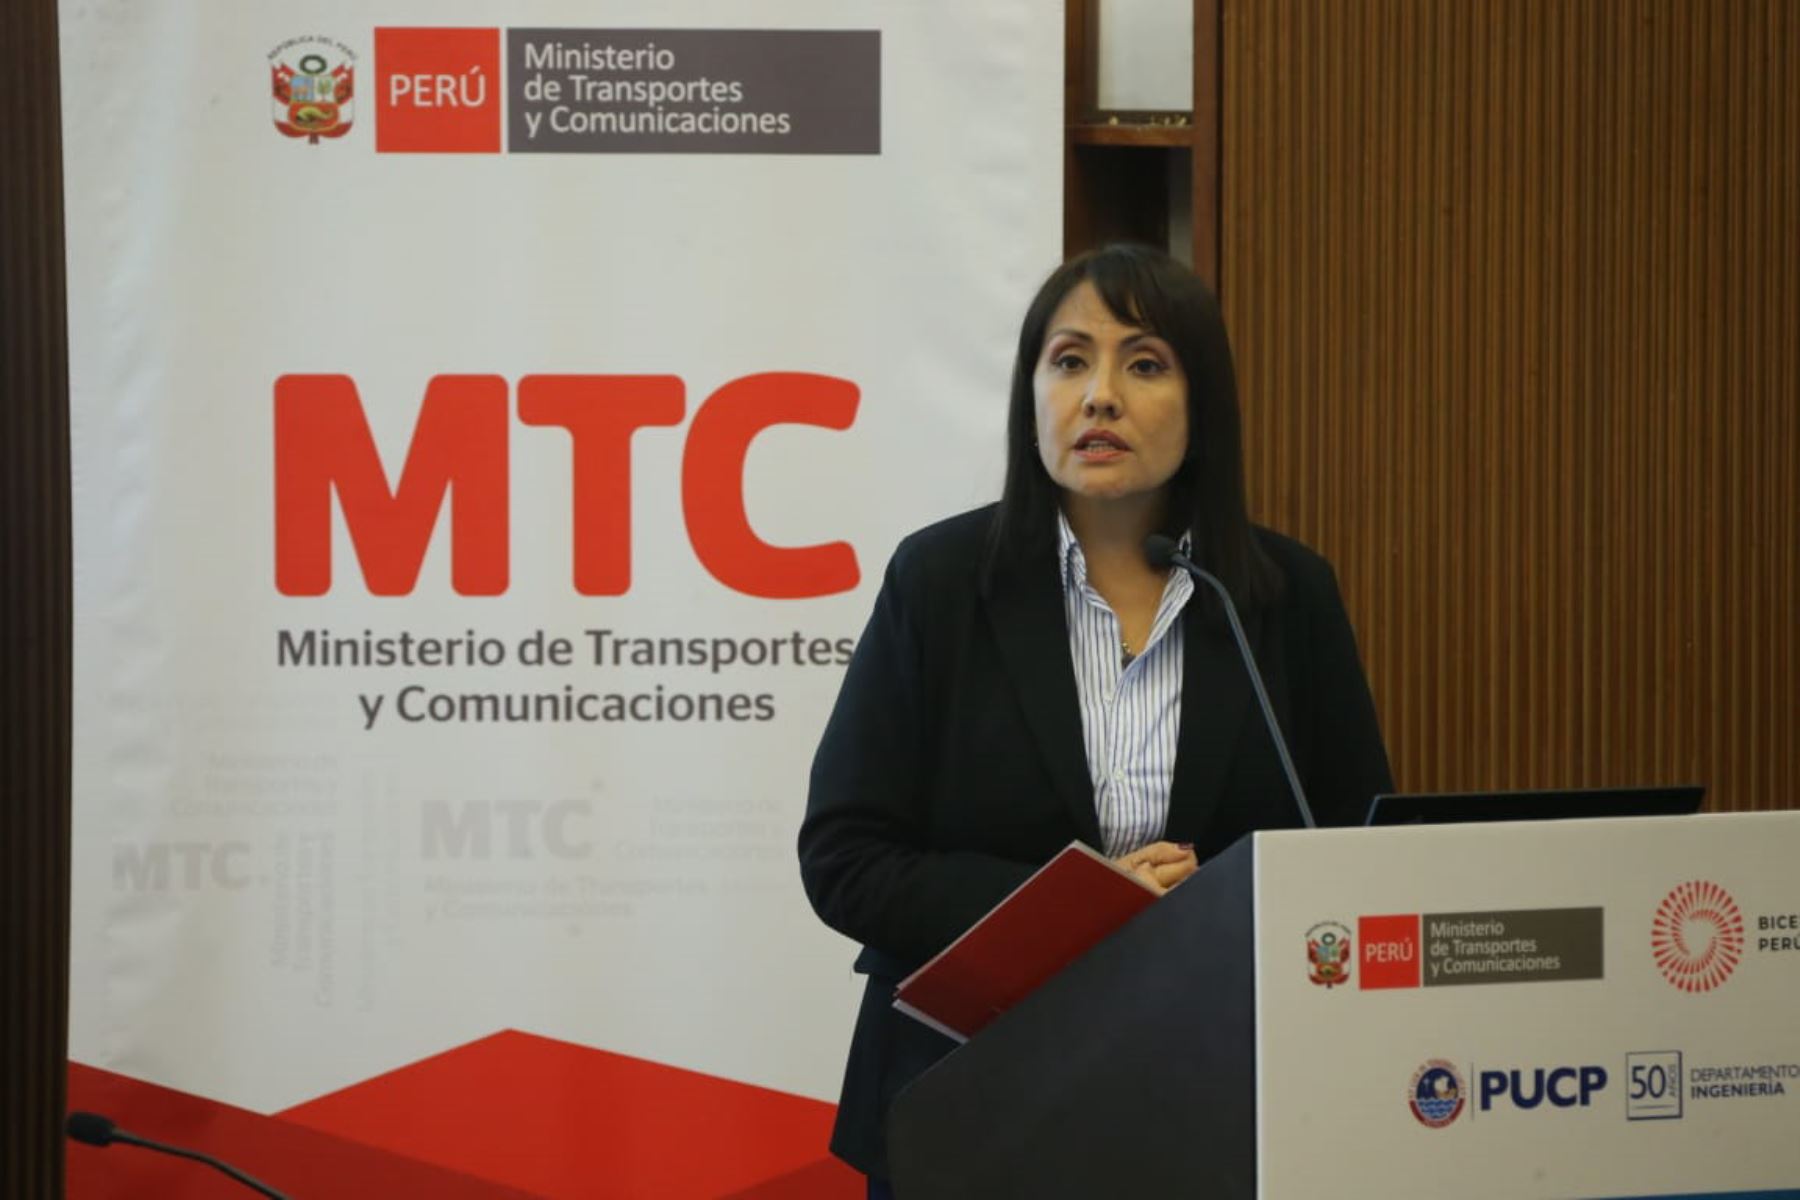 Ministra María Jara expone en foro académico “Infraestructura Vial, Movilidad Urbana y Calidad de Vida”